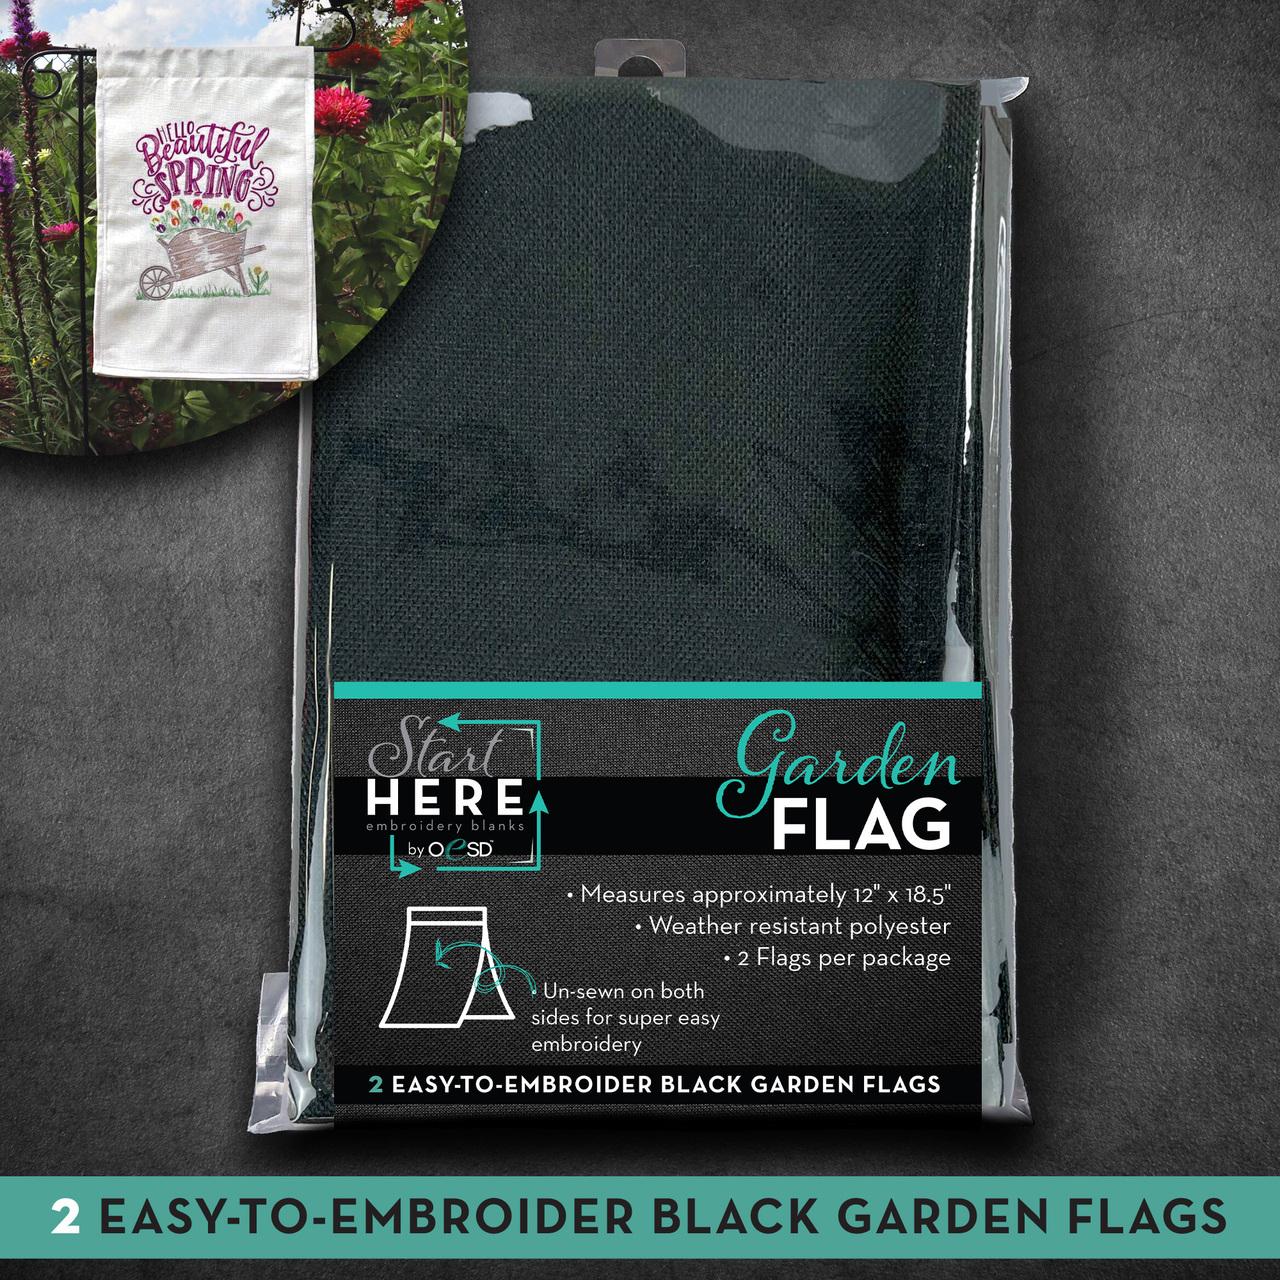 OESD Garden Flag 2pk - Black